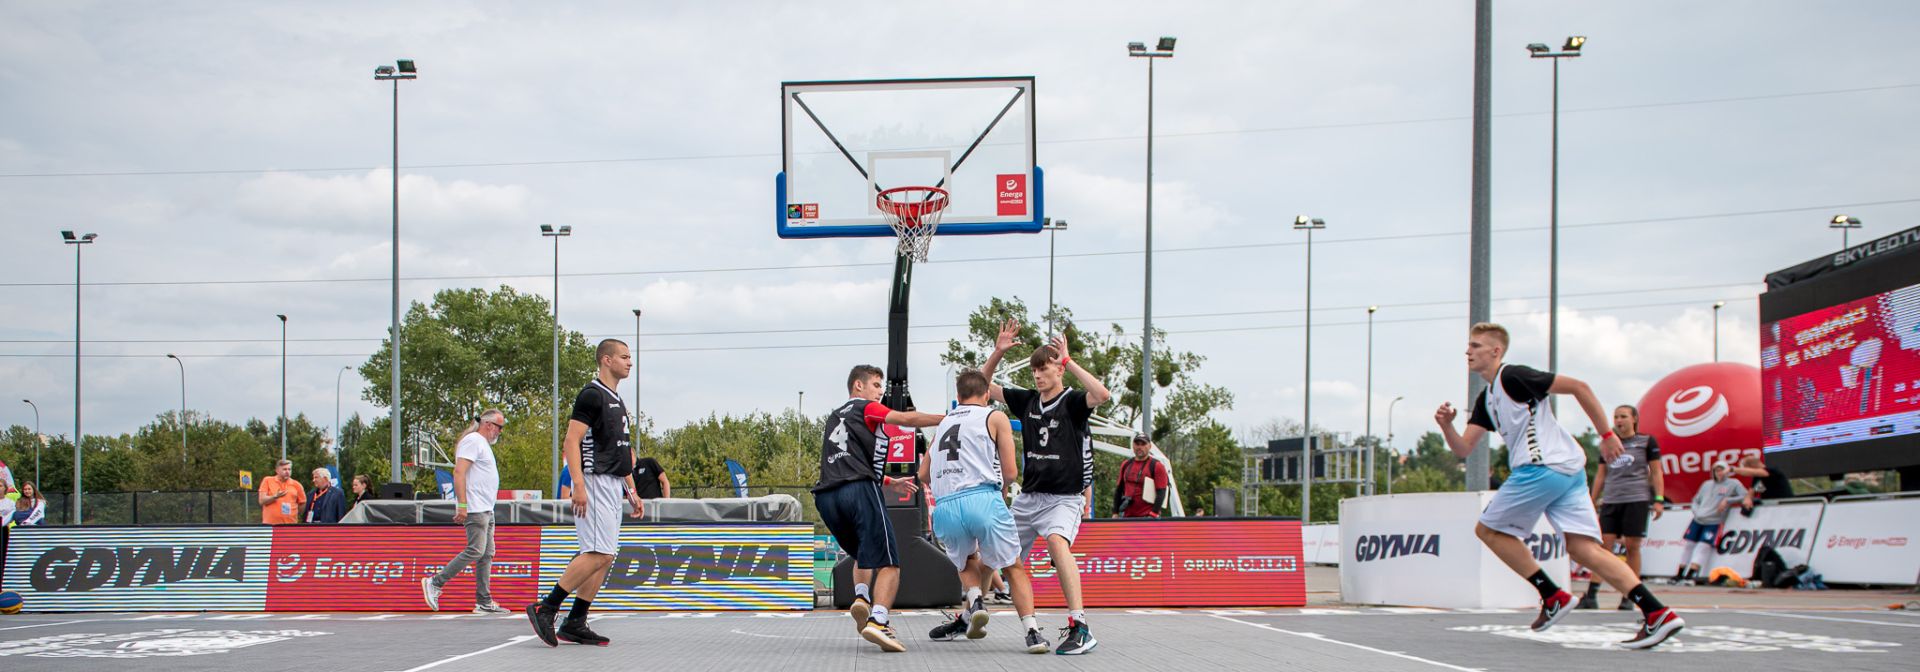 Koszykarze podczas turnieju 3x3 Gdynia 